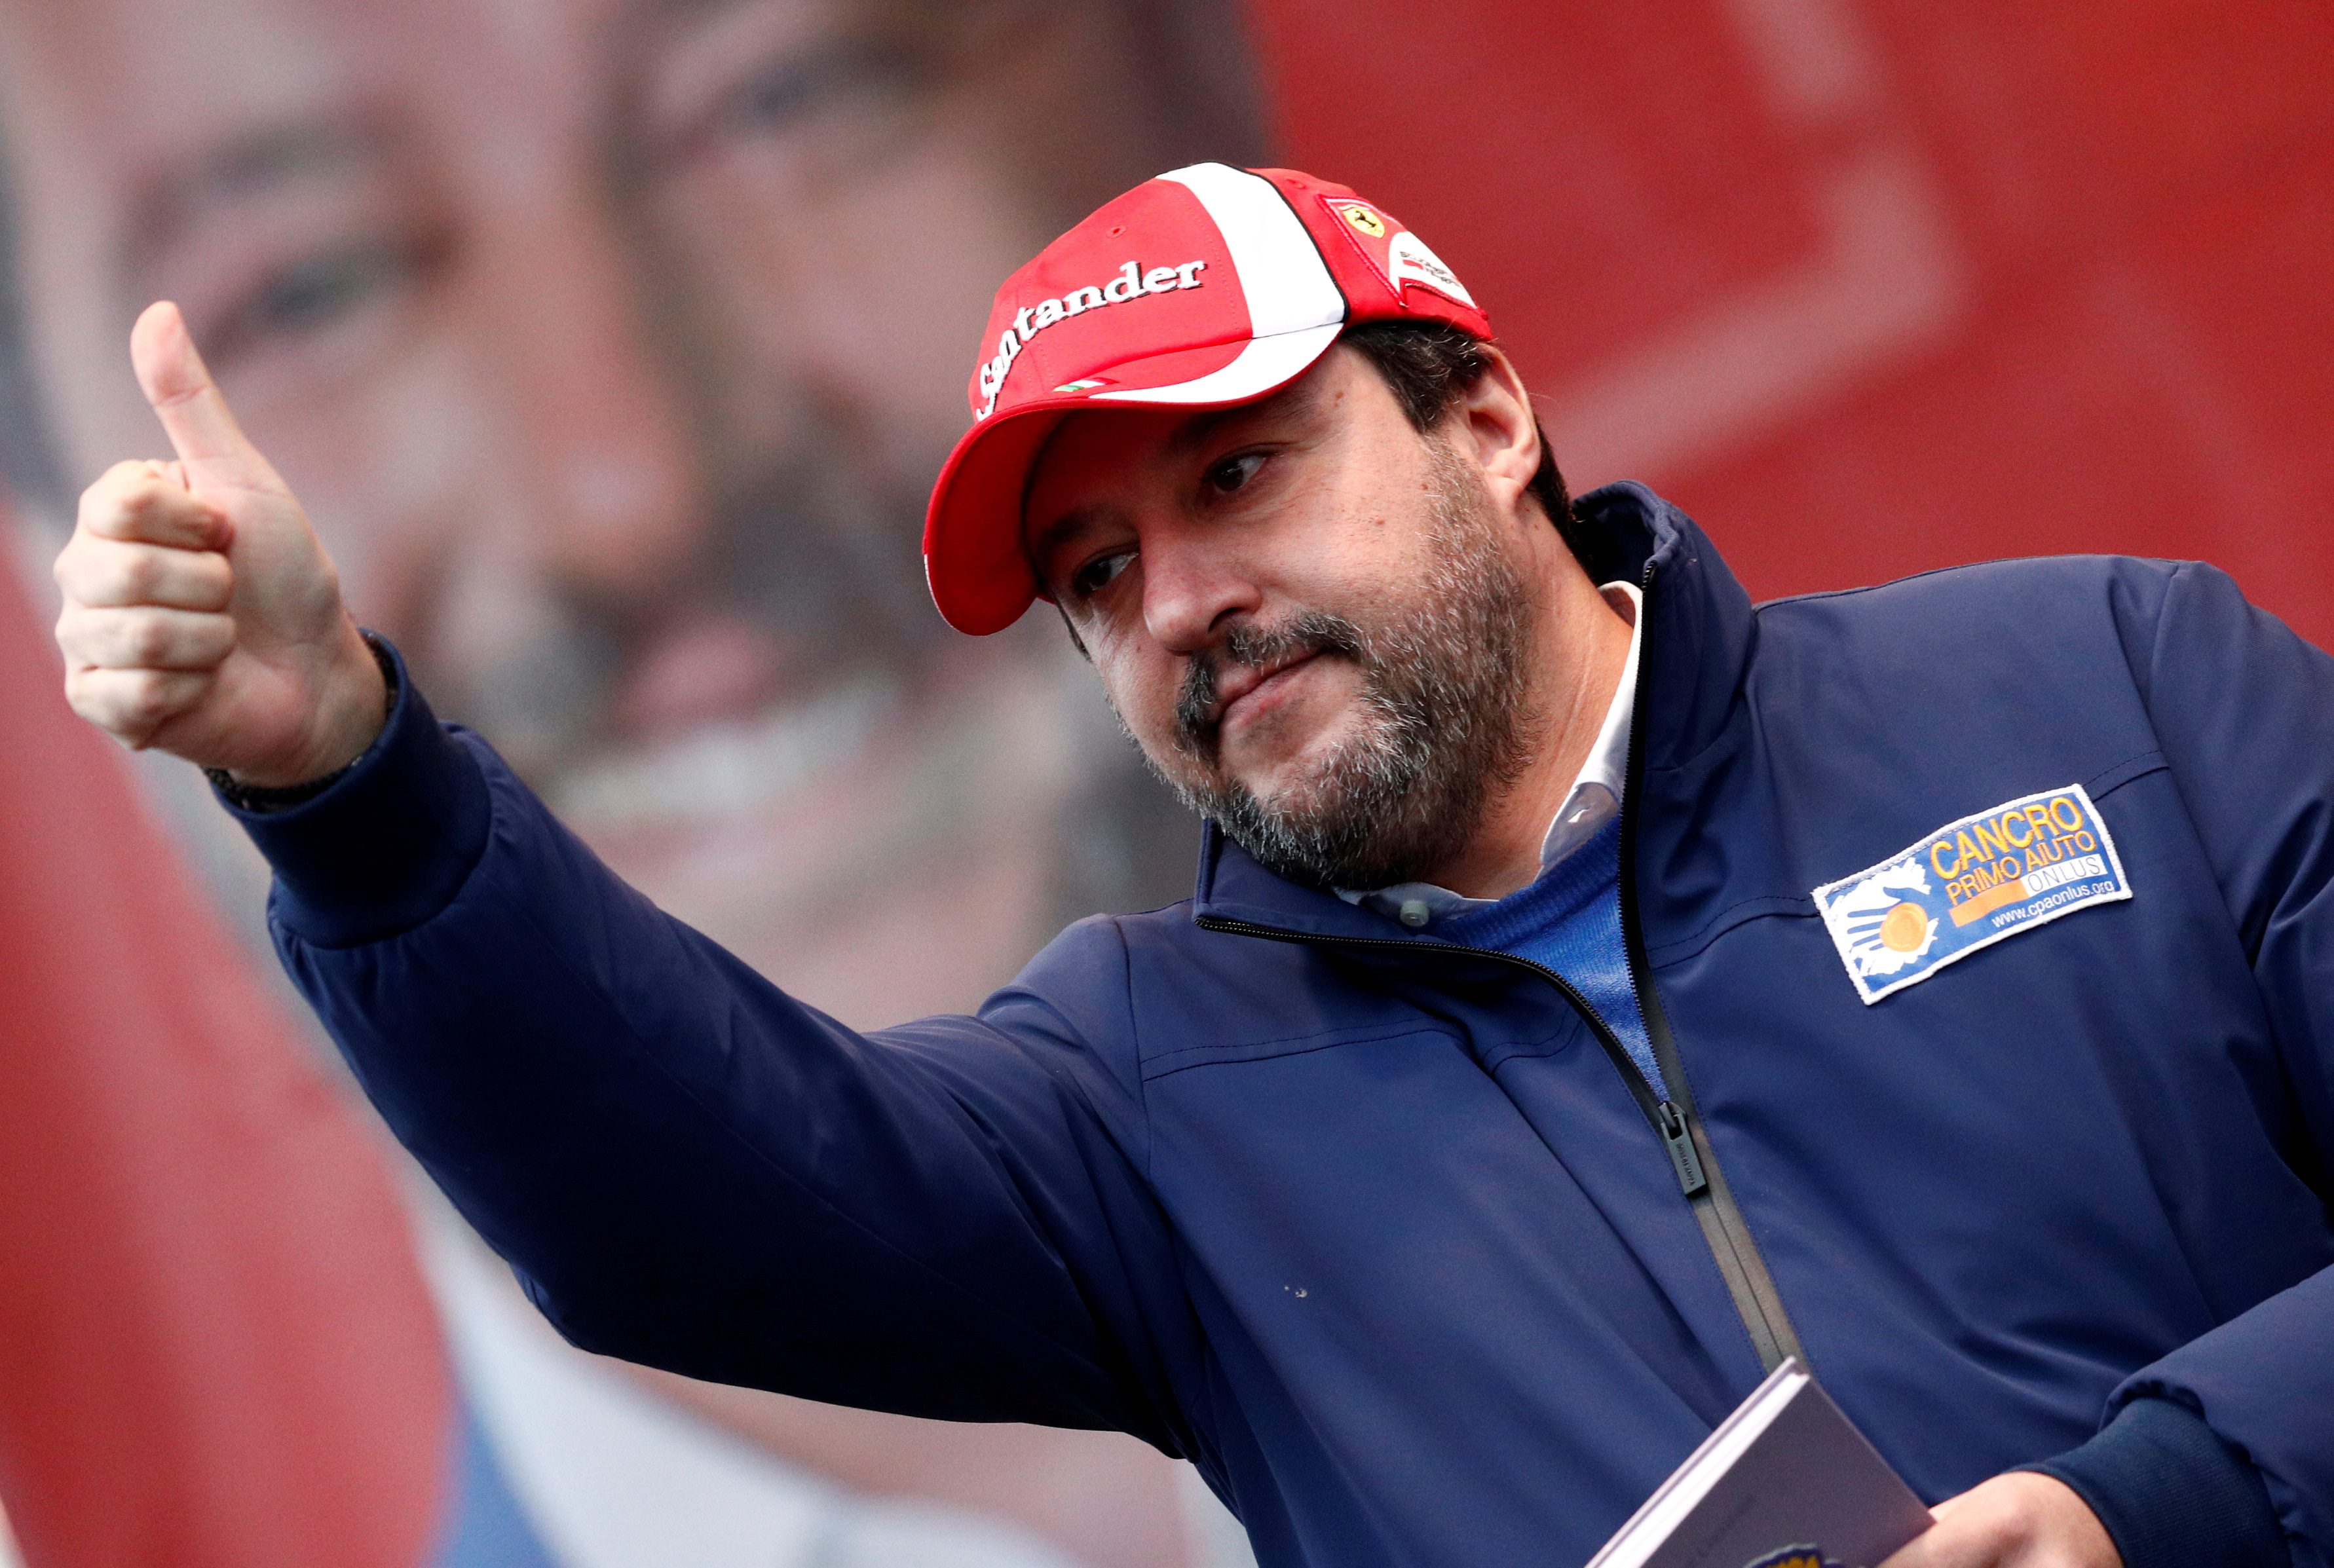 Il leader italiano dell'estrema destra Matteo Salvini